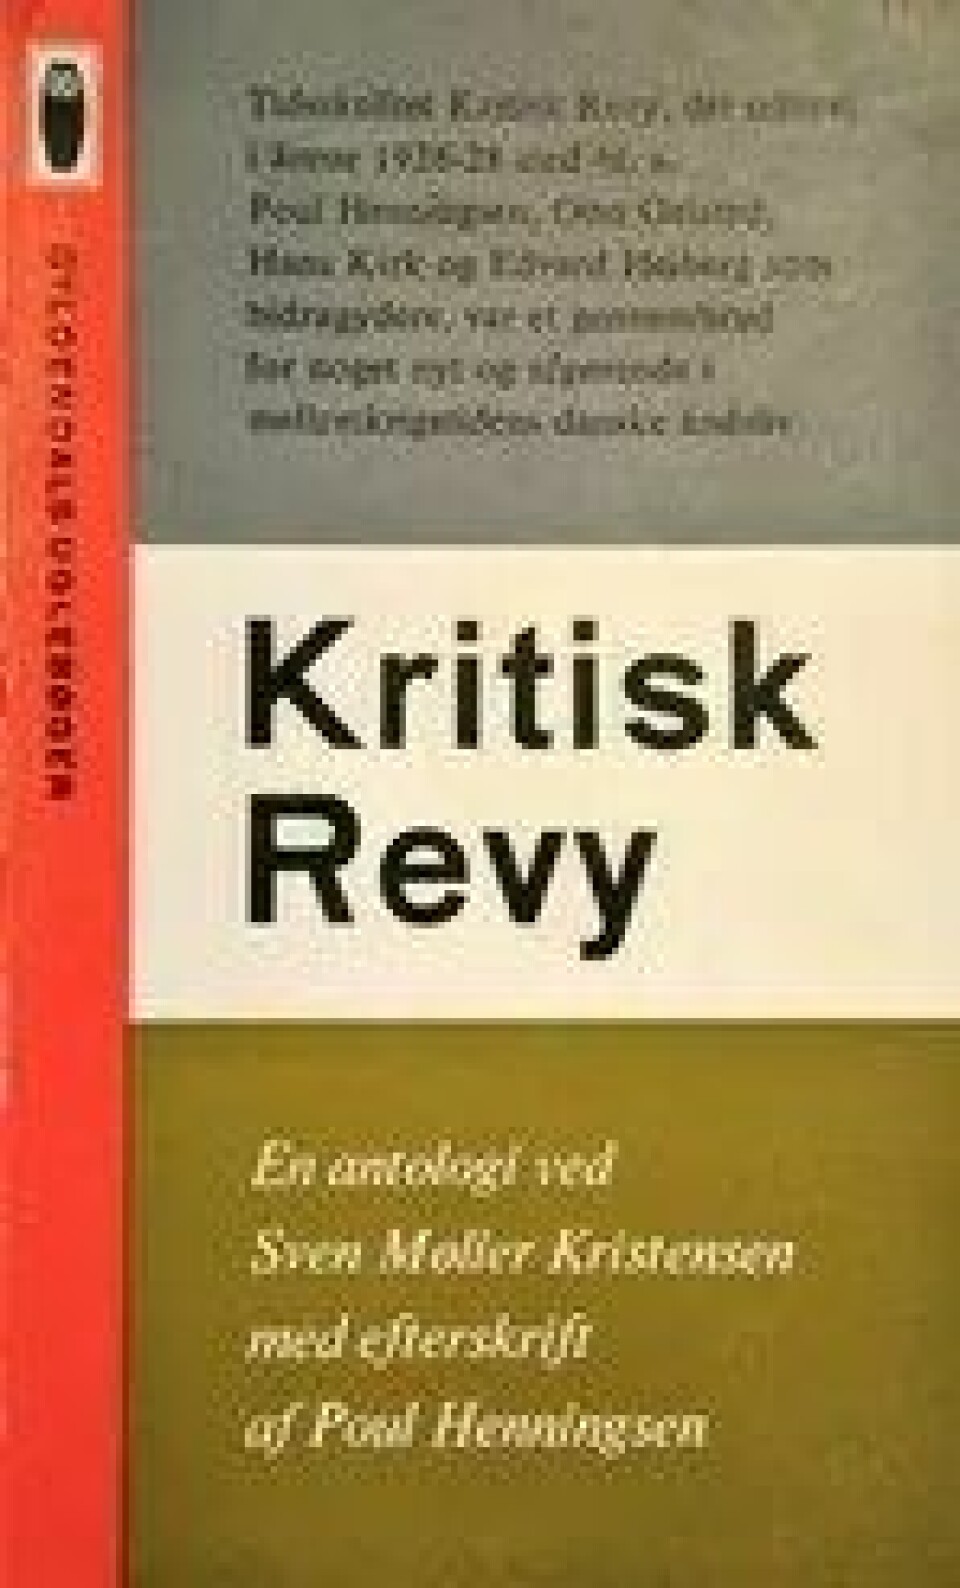 Tidsskriftet Kritisk Revy ble avgjørende for PH på 1920-tallet. Paperback-antologien fra 1963 markerte PHs klassikerstatus.